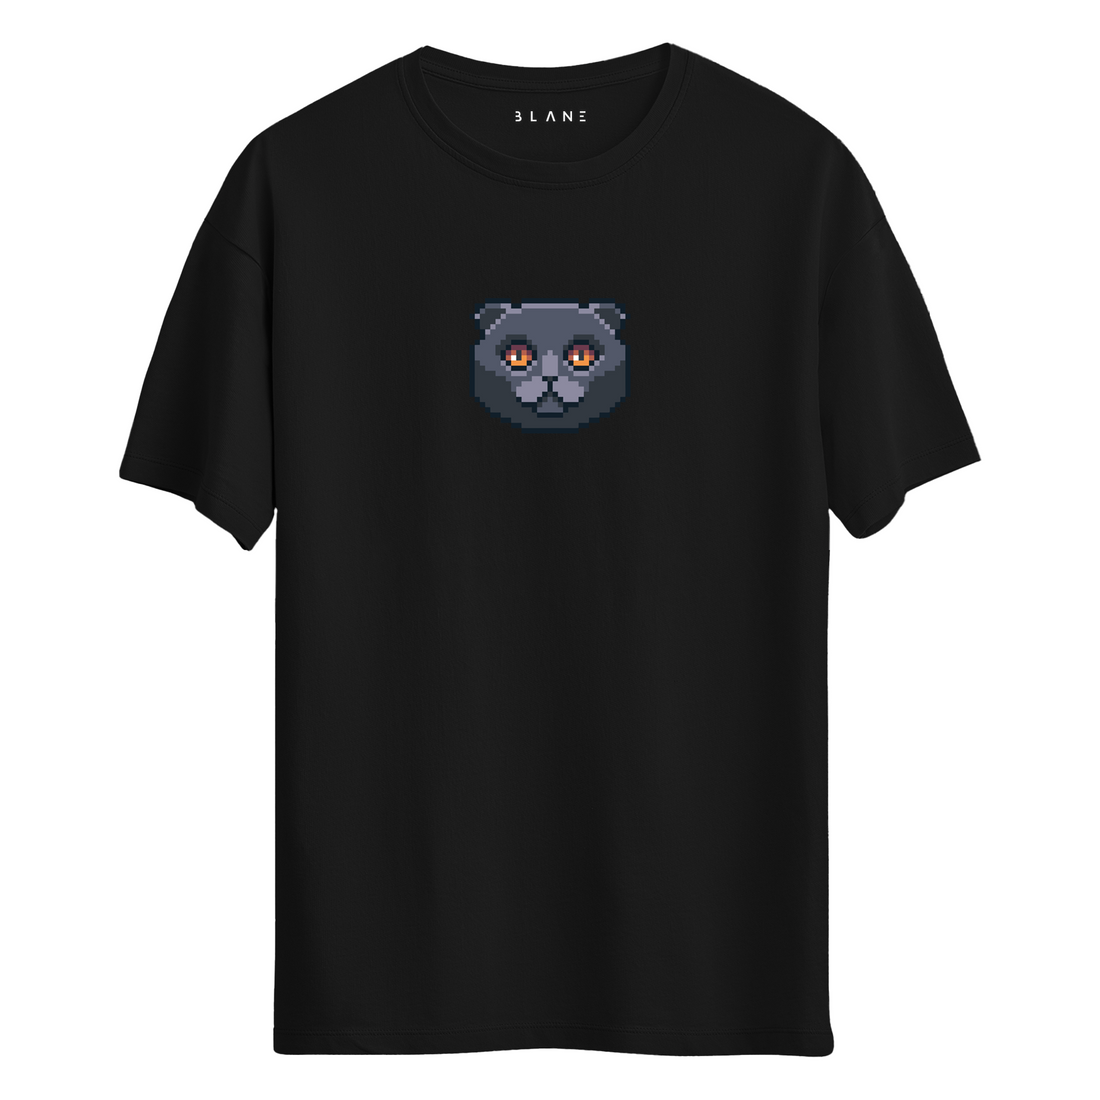 Kedi - T-Shirt